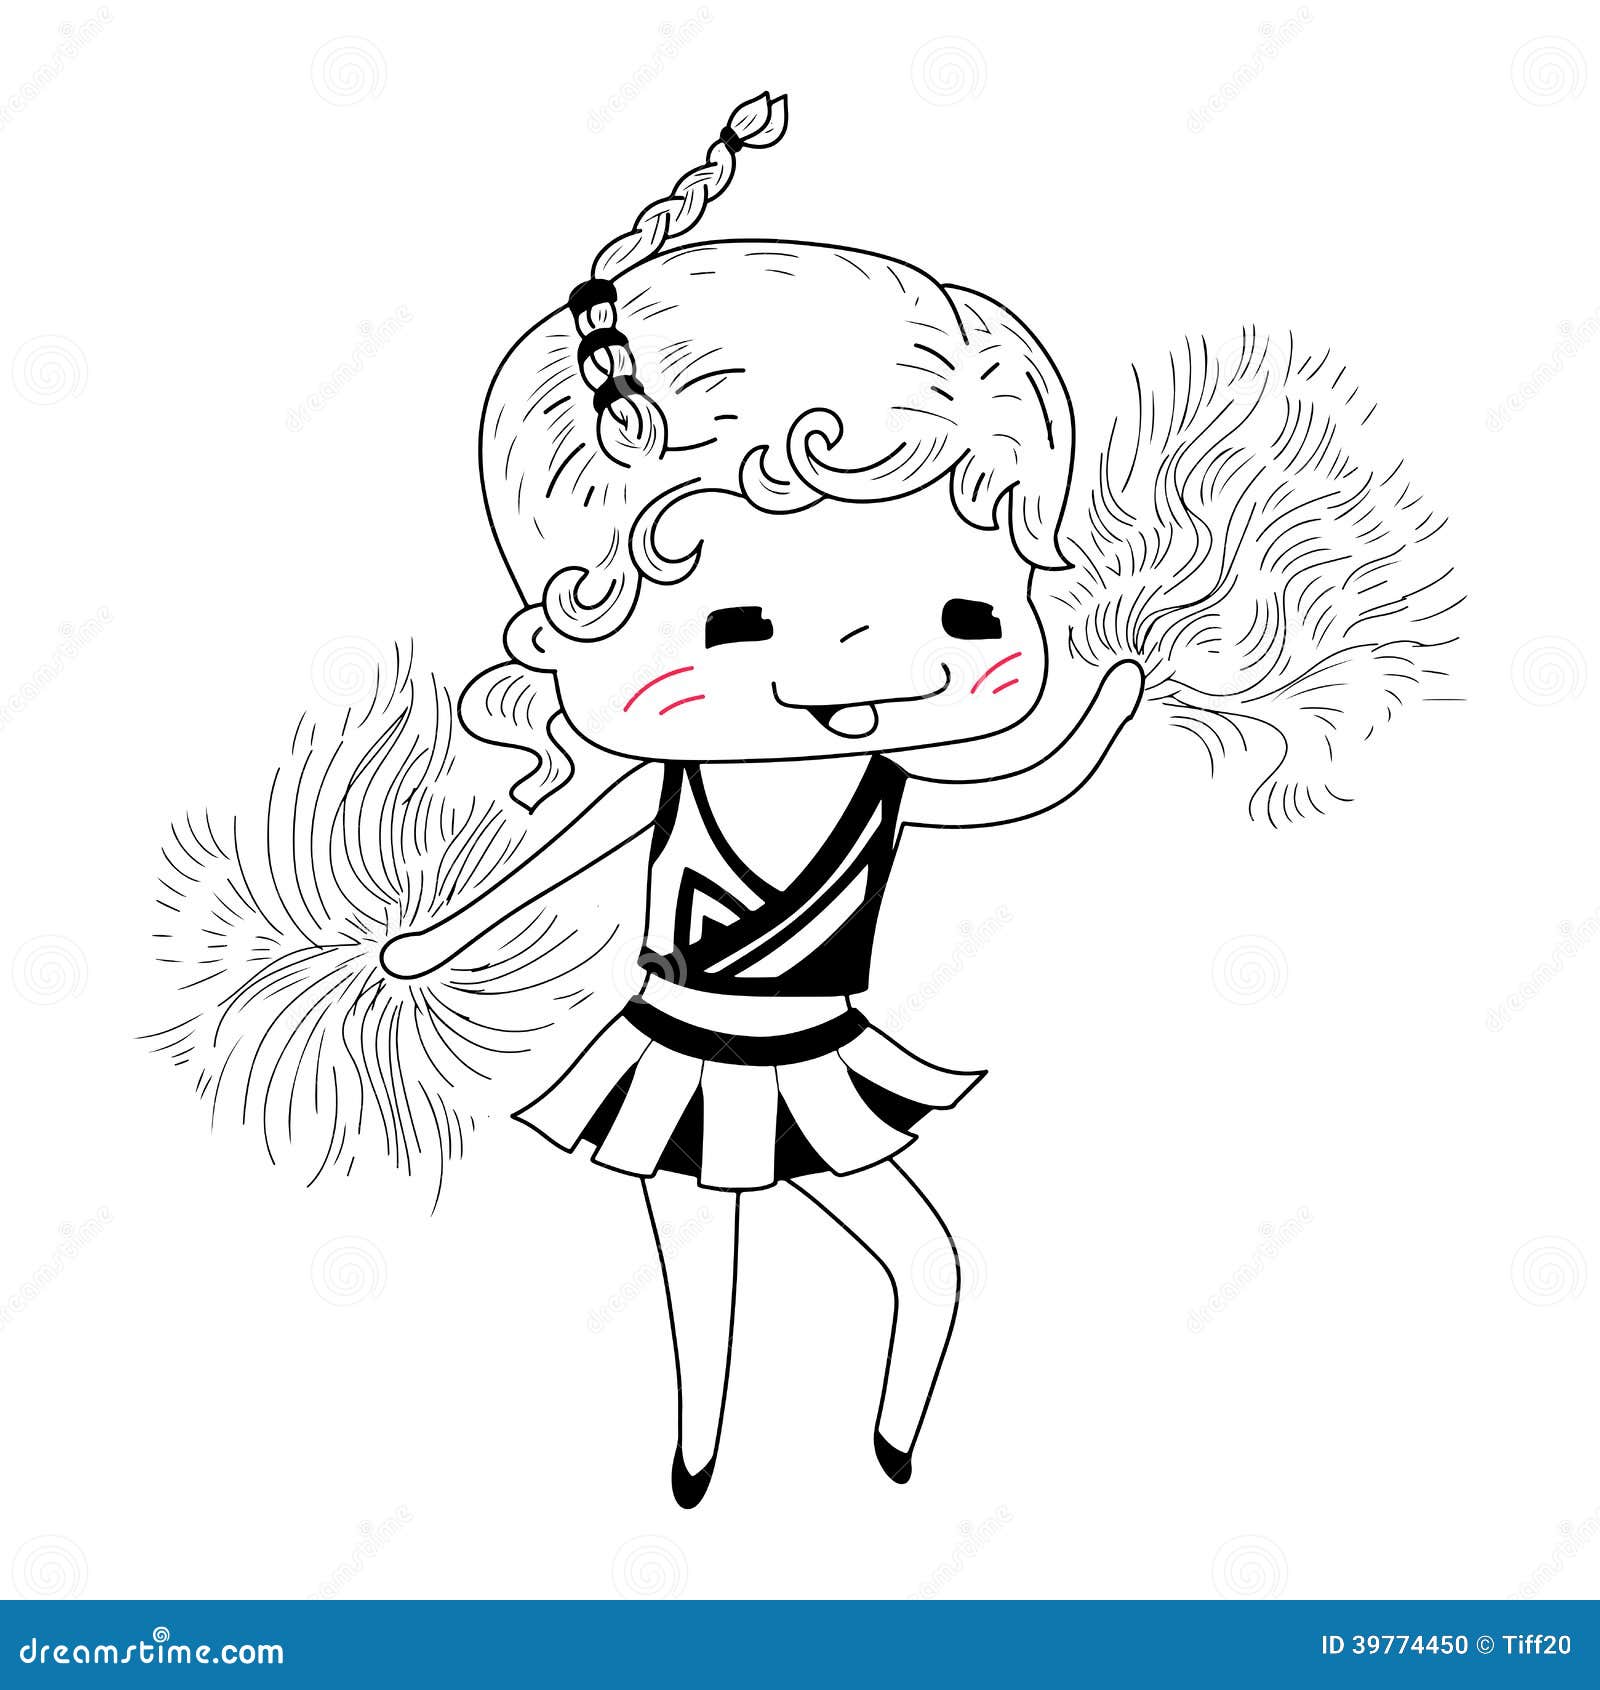 Cartoon cheerleader stock vector. Illustration of drawing - 39774450